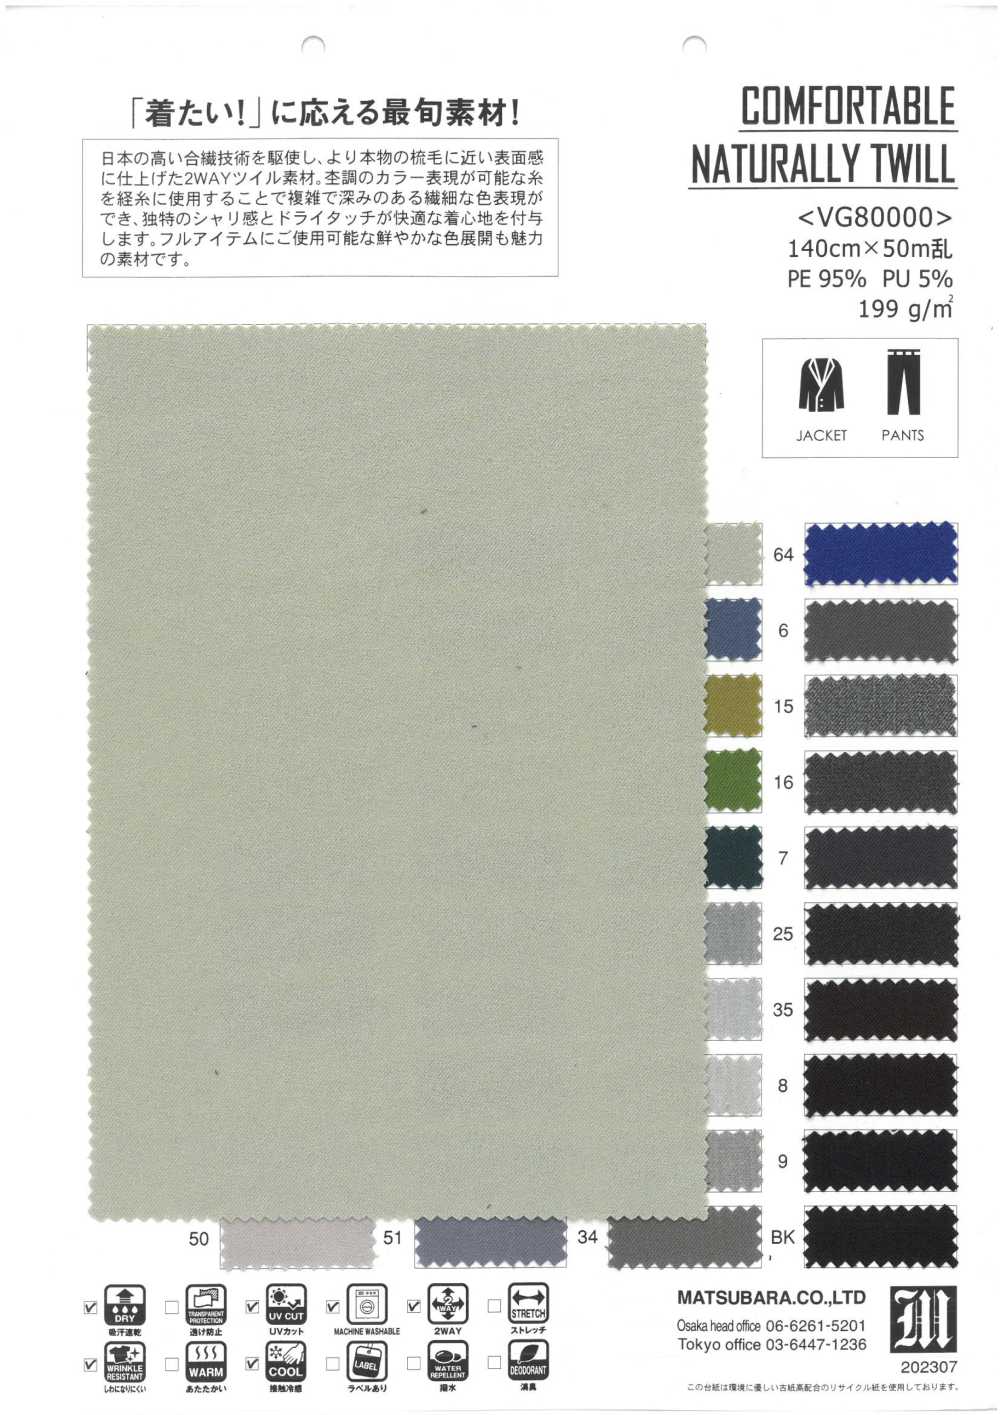 VG80000 BEQUEMER NATÜRLICHER TWILL[Textilgewebe] Matsubara